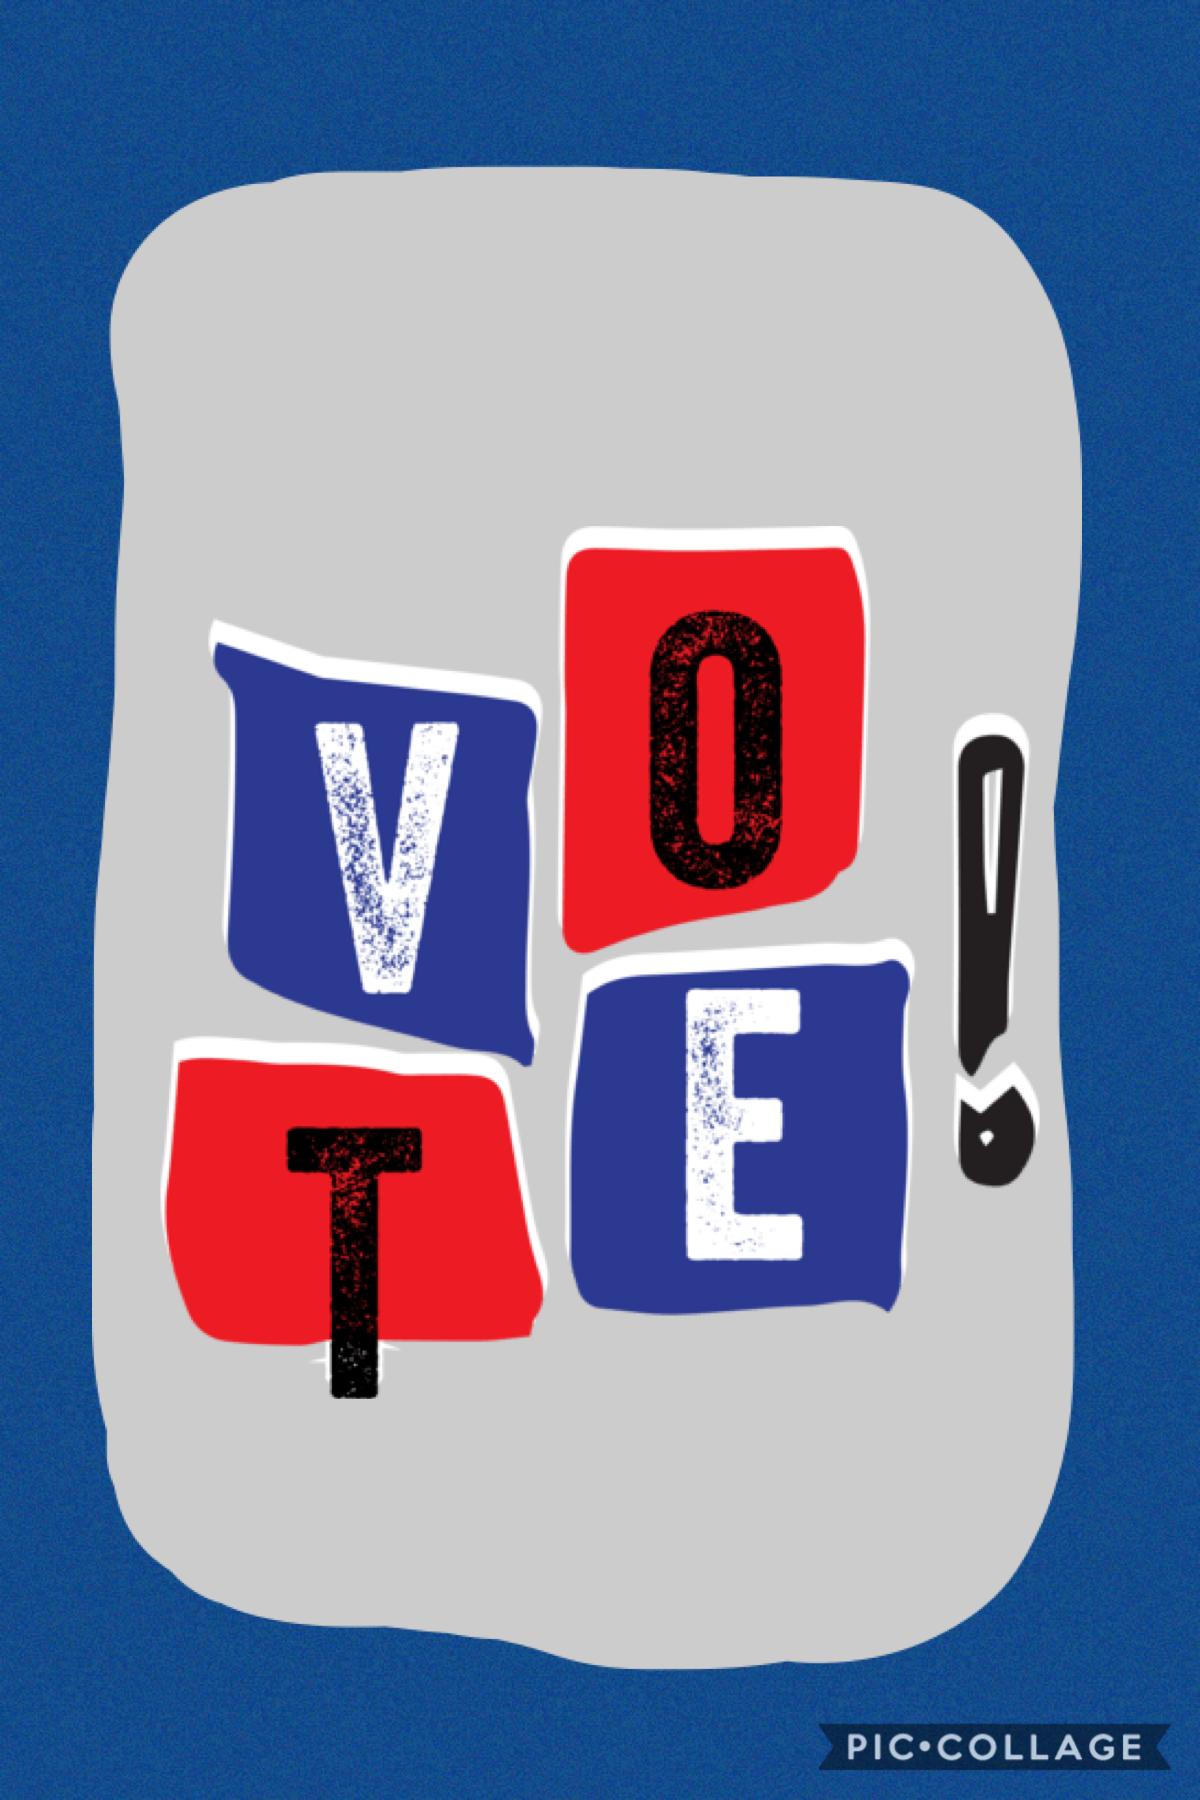 🇺🇸tap🇺🇸
Vote near you! USA!